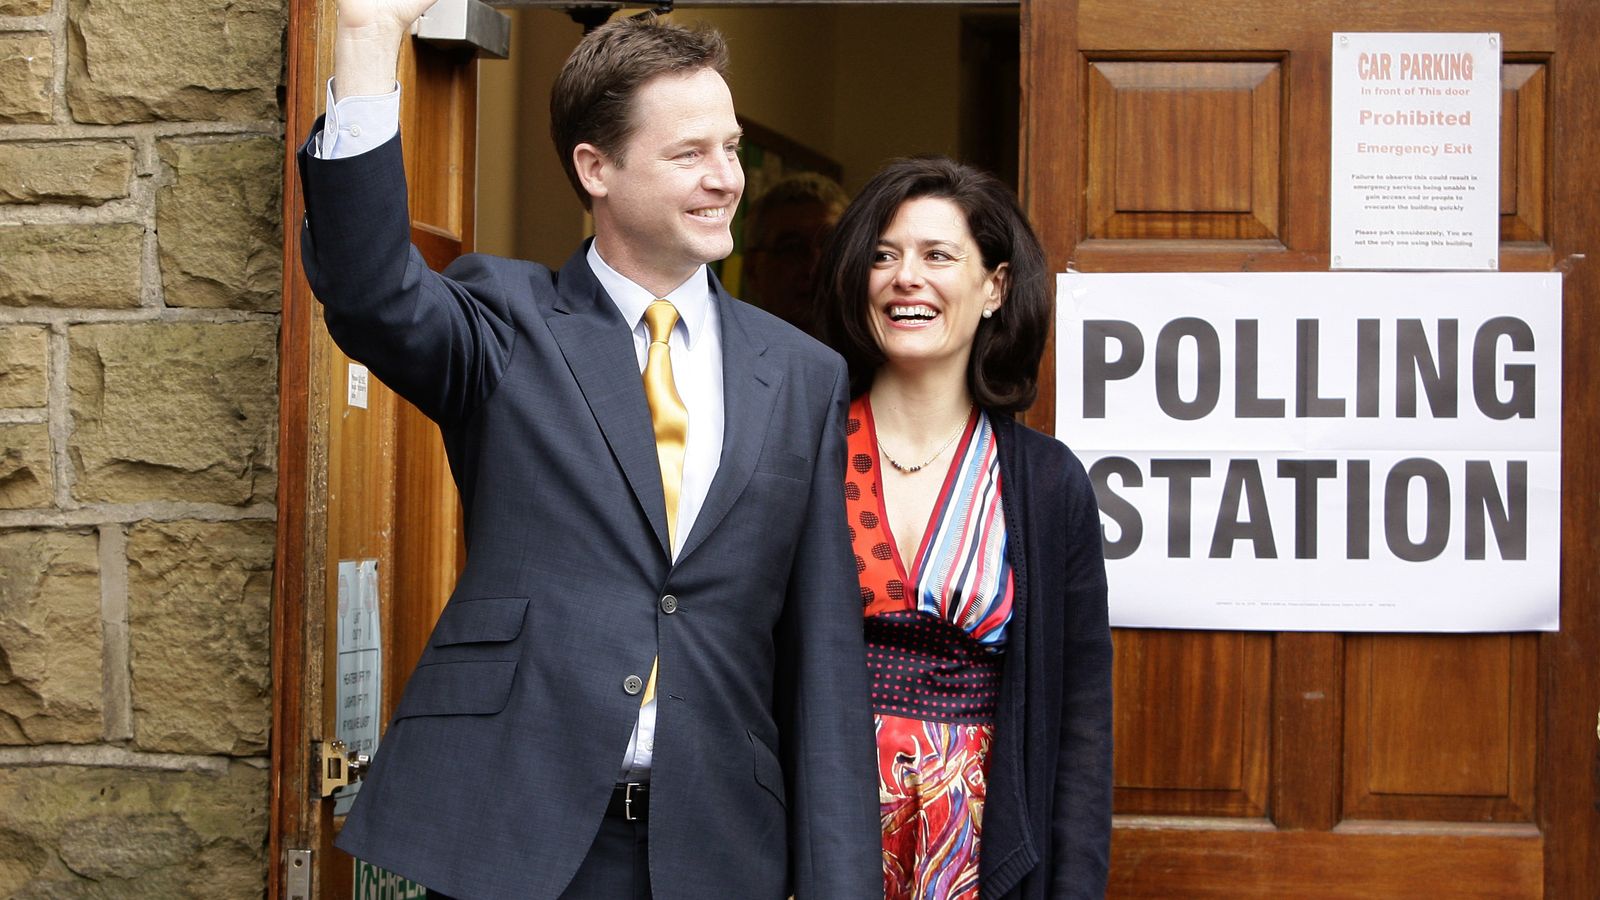 Foto: La abogada Miriam González Durántez, autora del artículo, con su marido, el ex líder del Partido Liberal británico Nick Clegg. (EC)